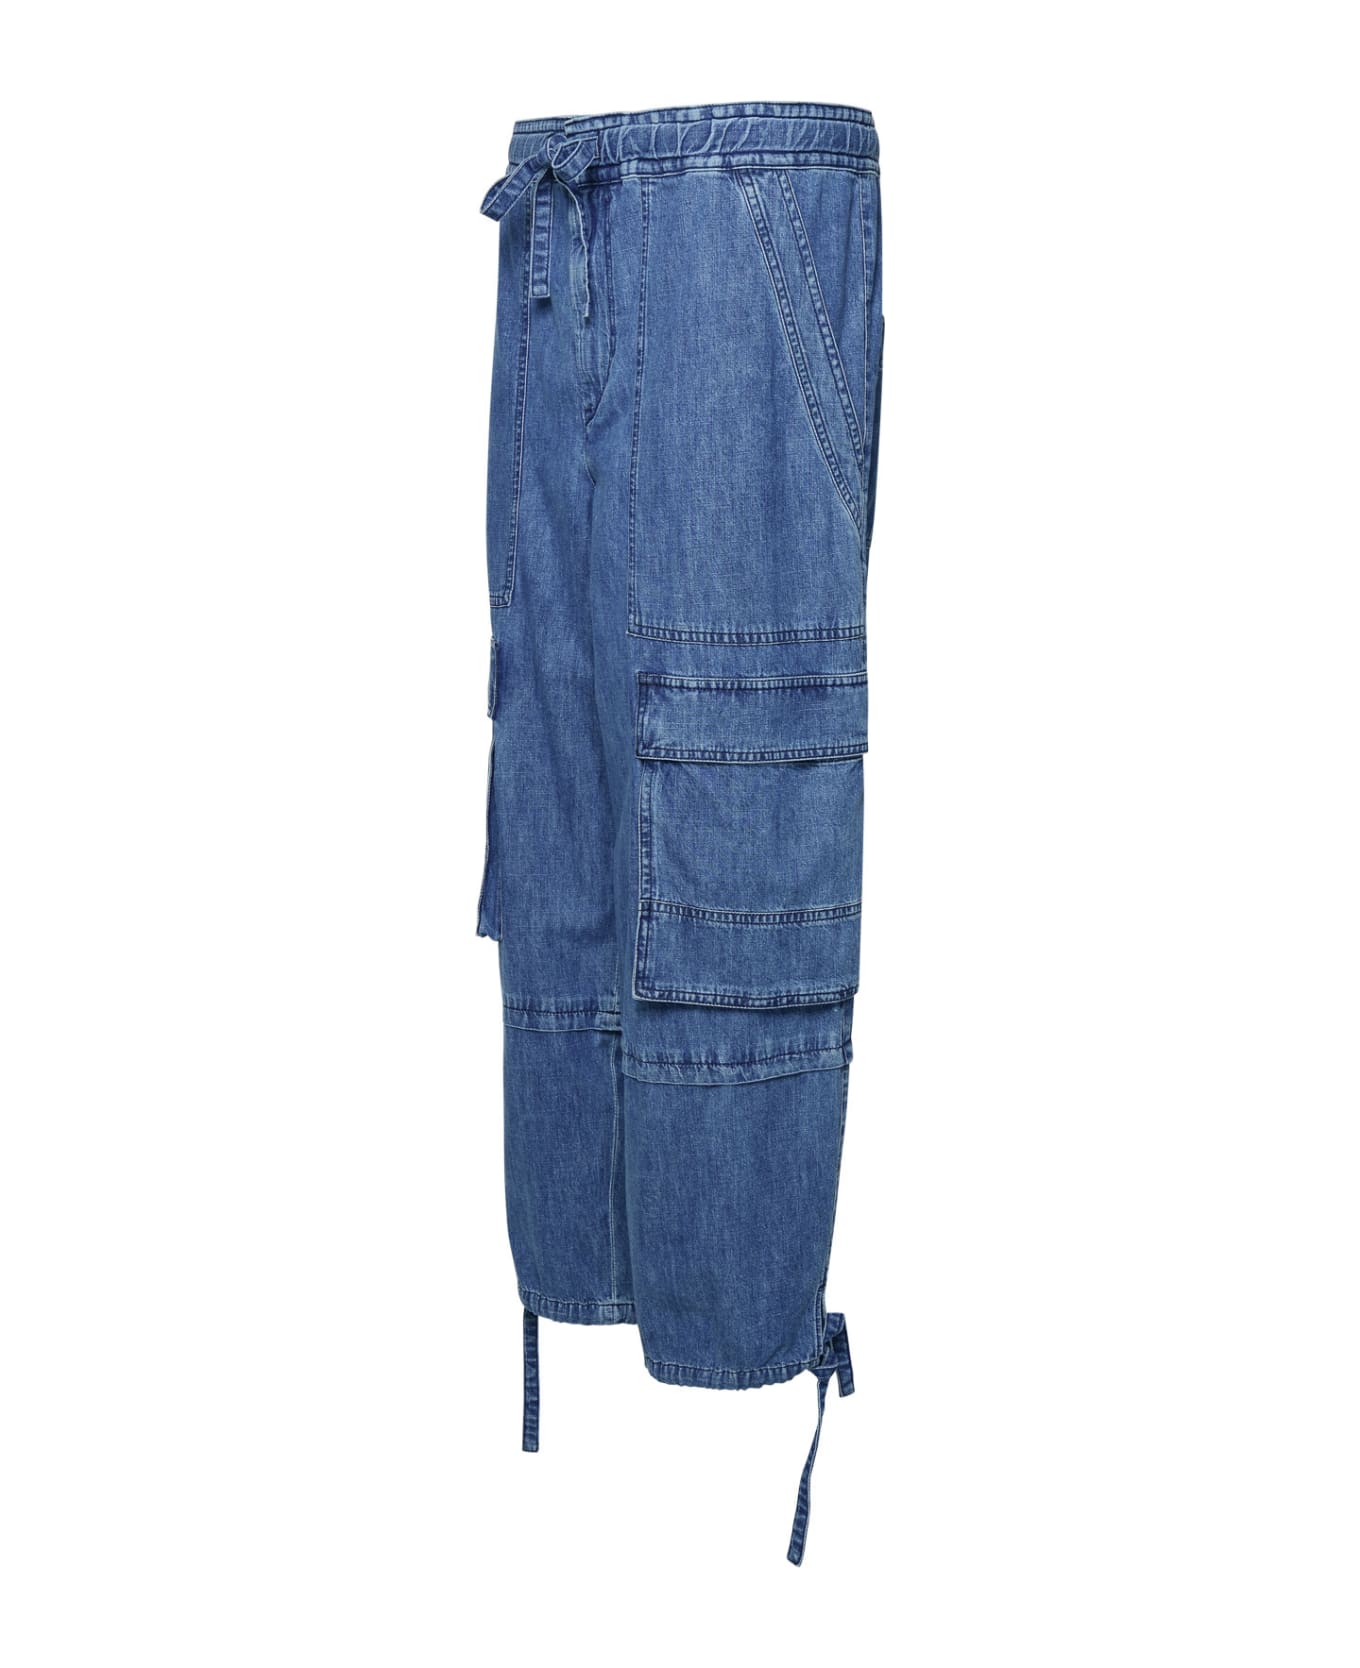 Marant Étoile Cotton Cargo Pants - BLUE デニム